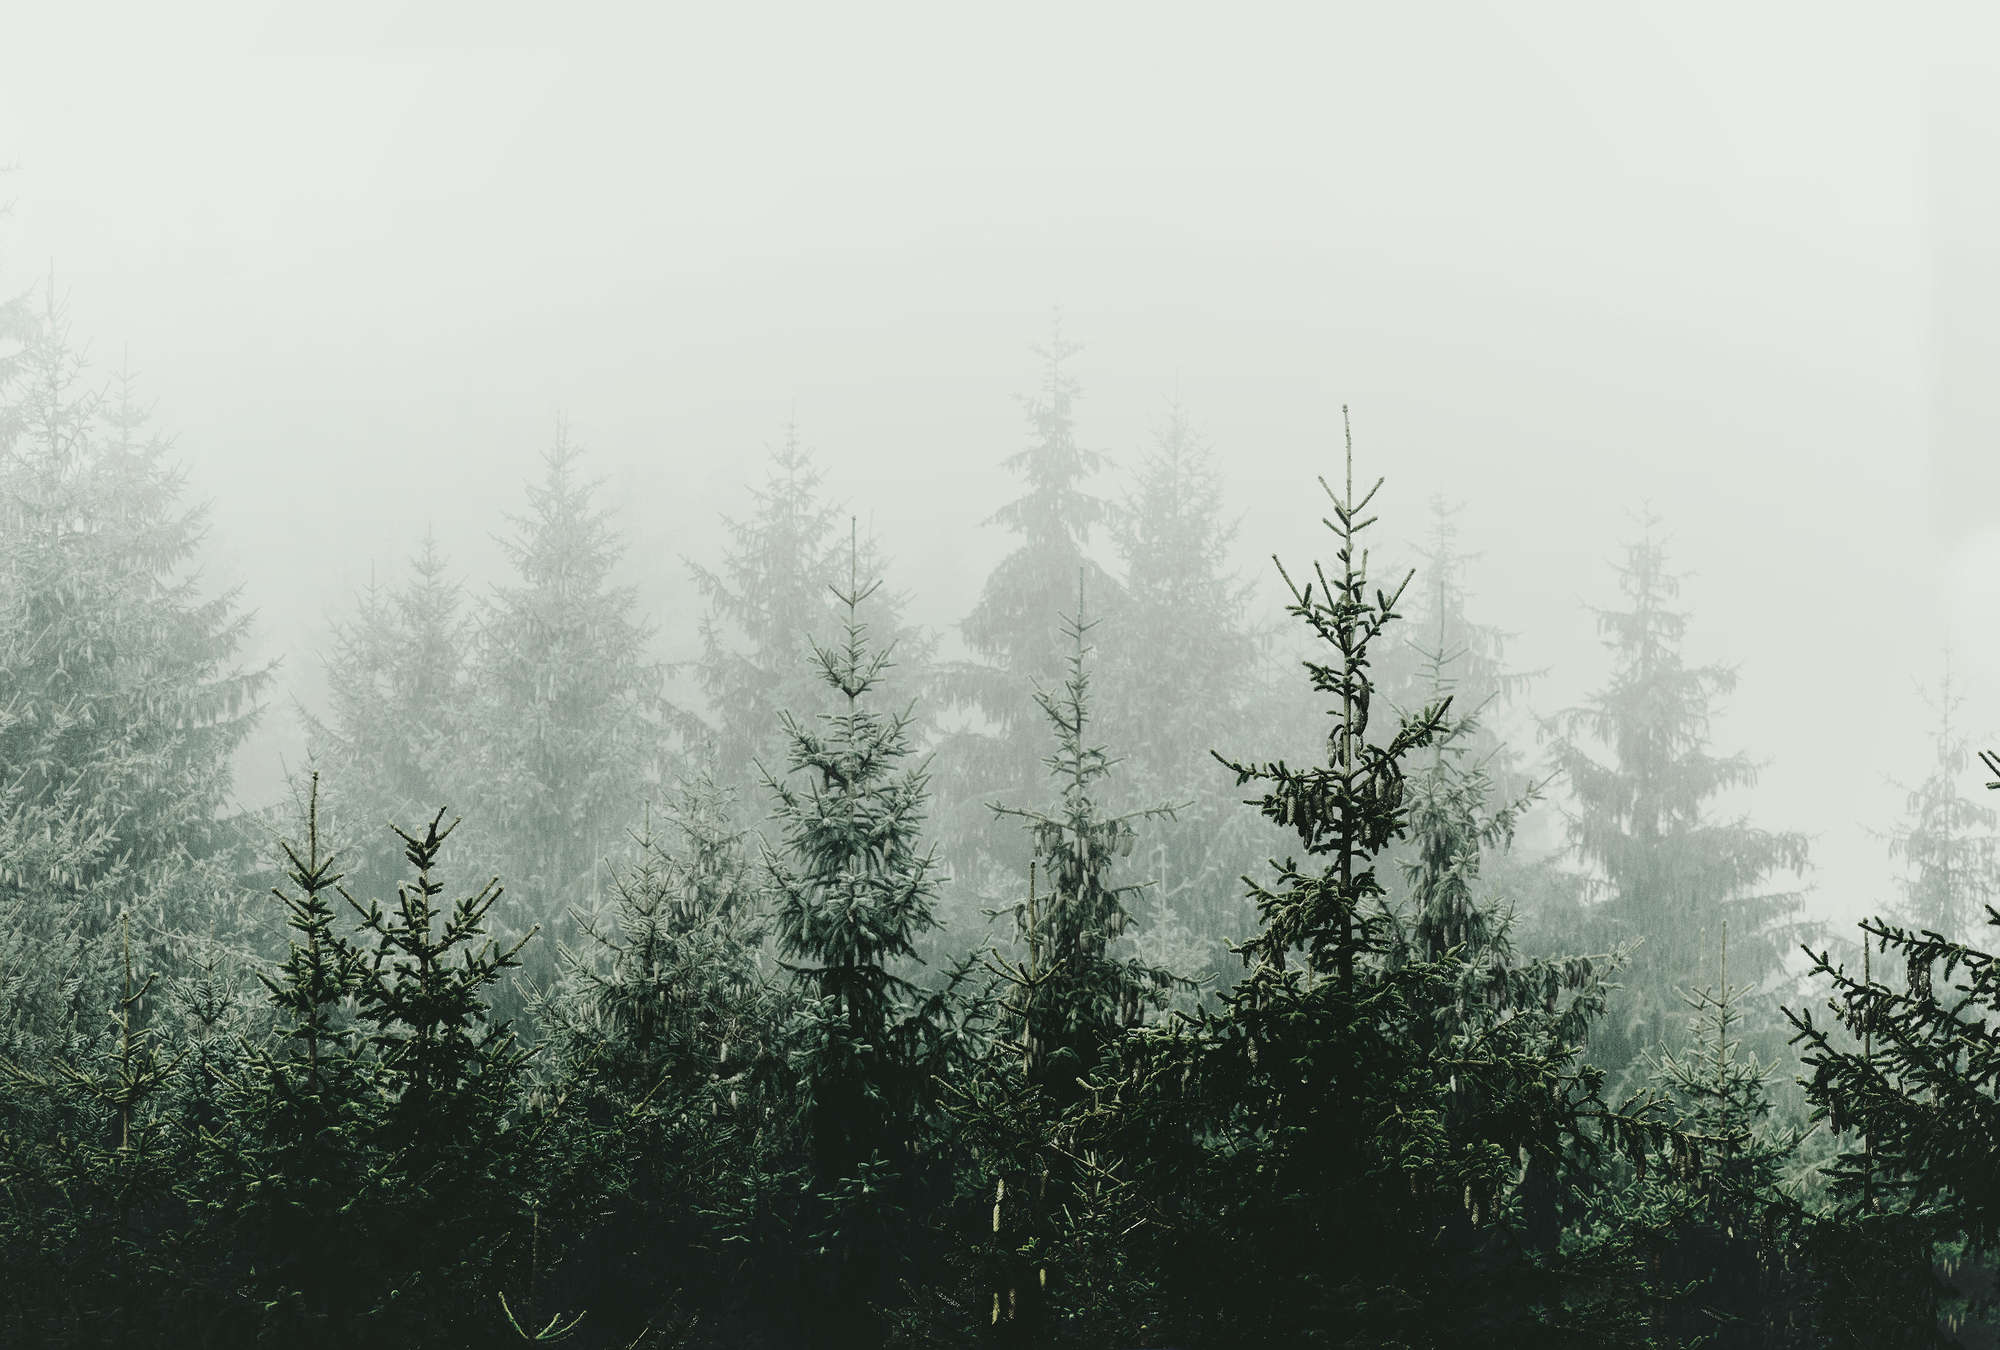             Mural del bosque en la niebla de abetos de hoja perenne
        